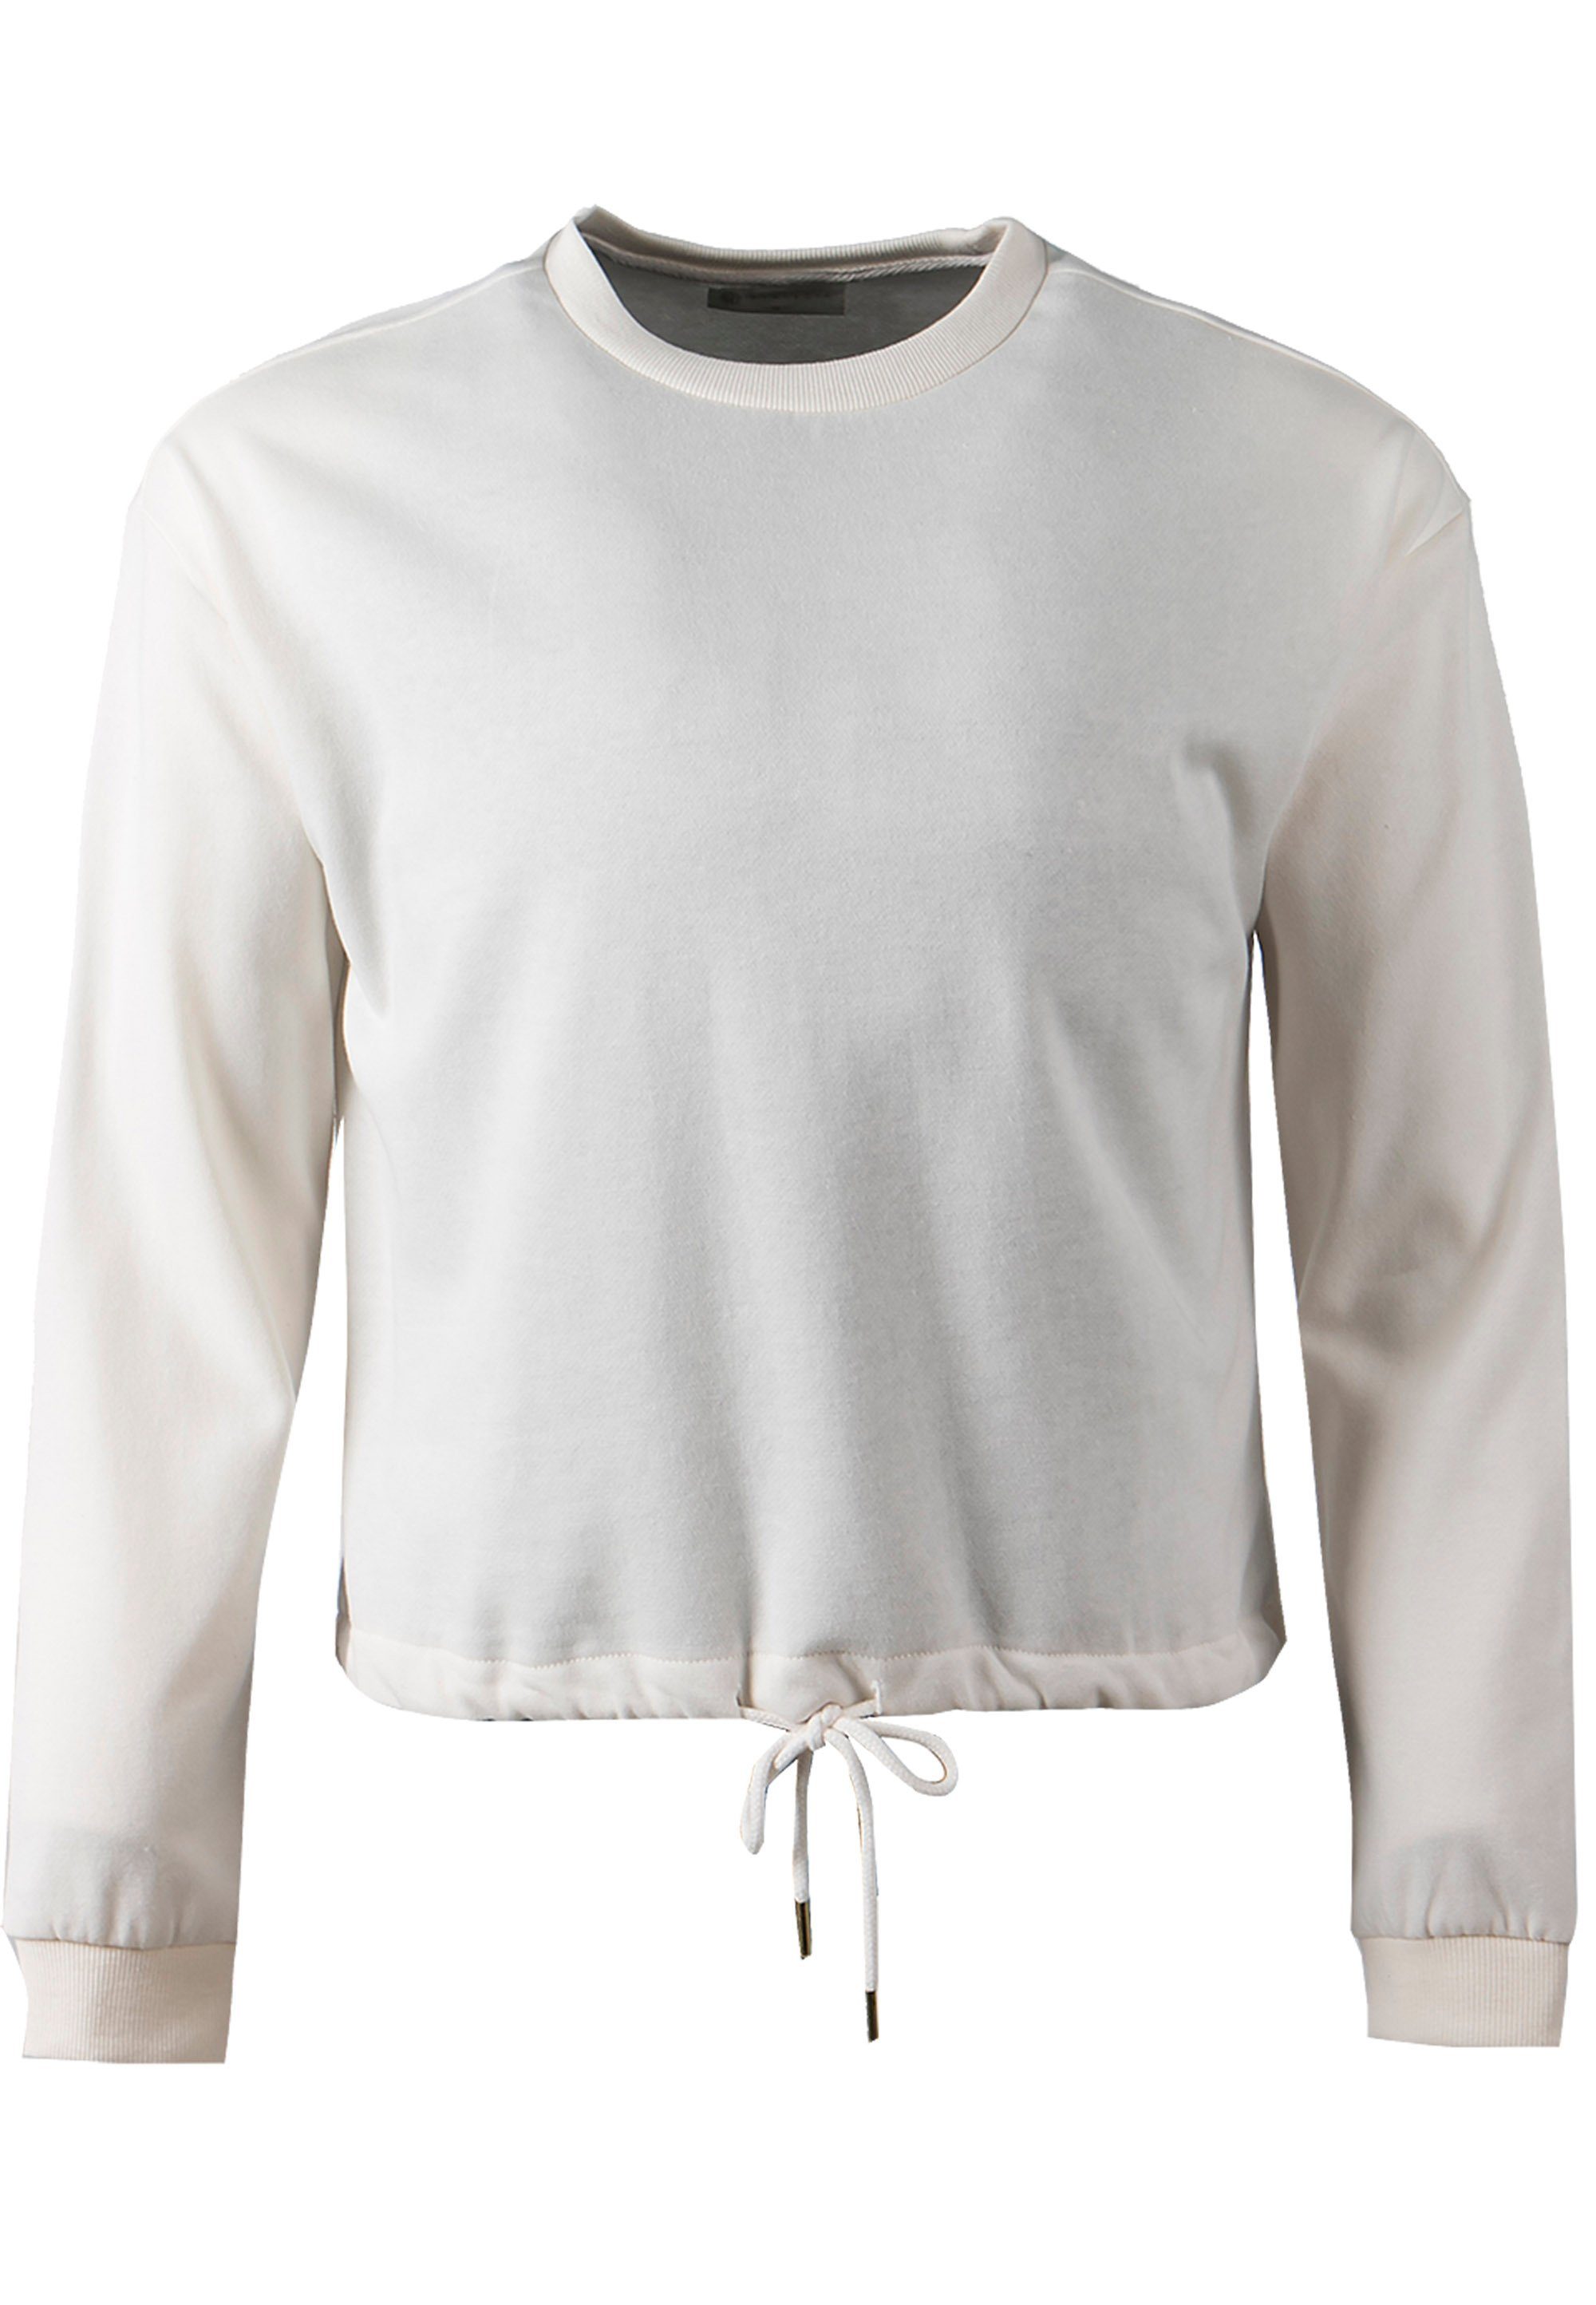 ATHLECIA Sweatshirt Soffina in hippem Style, Material aus Polyester und  Baumwolle ist besonders weich